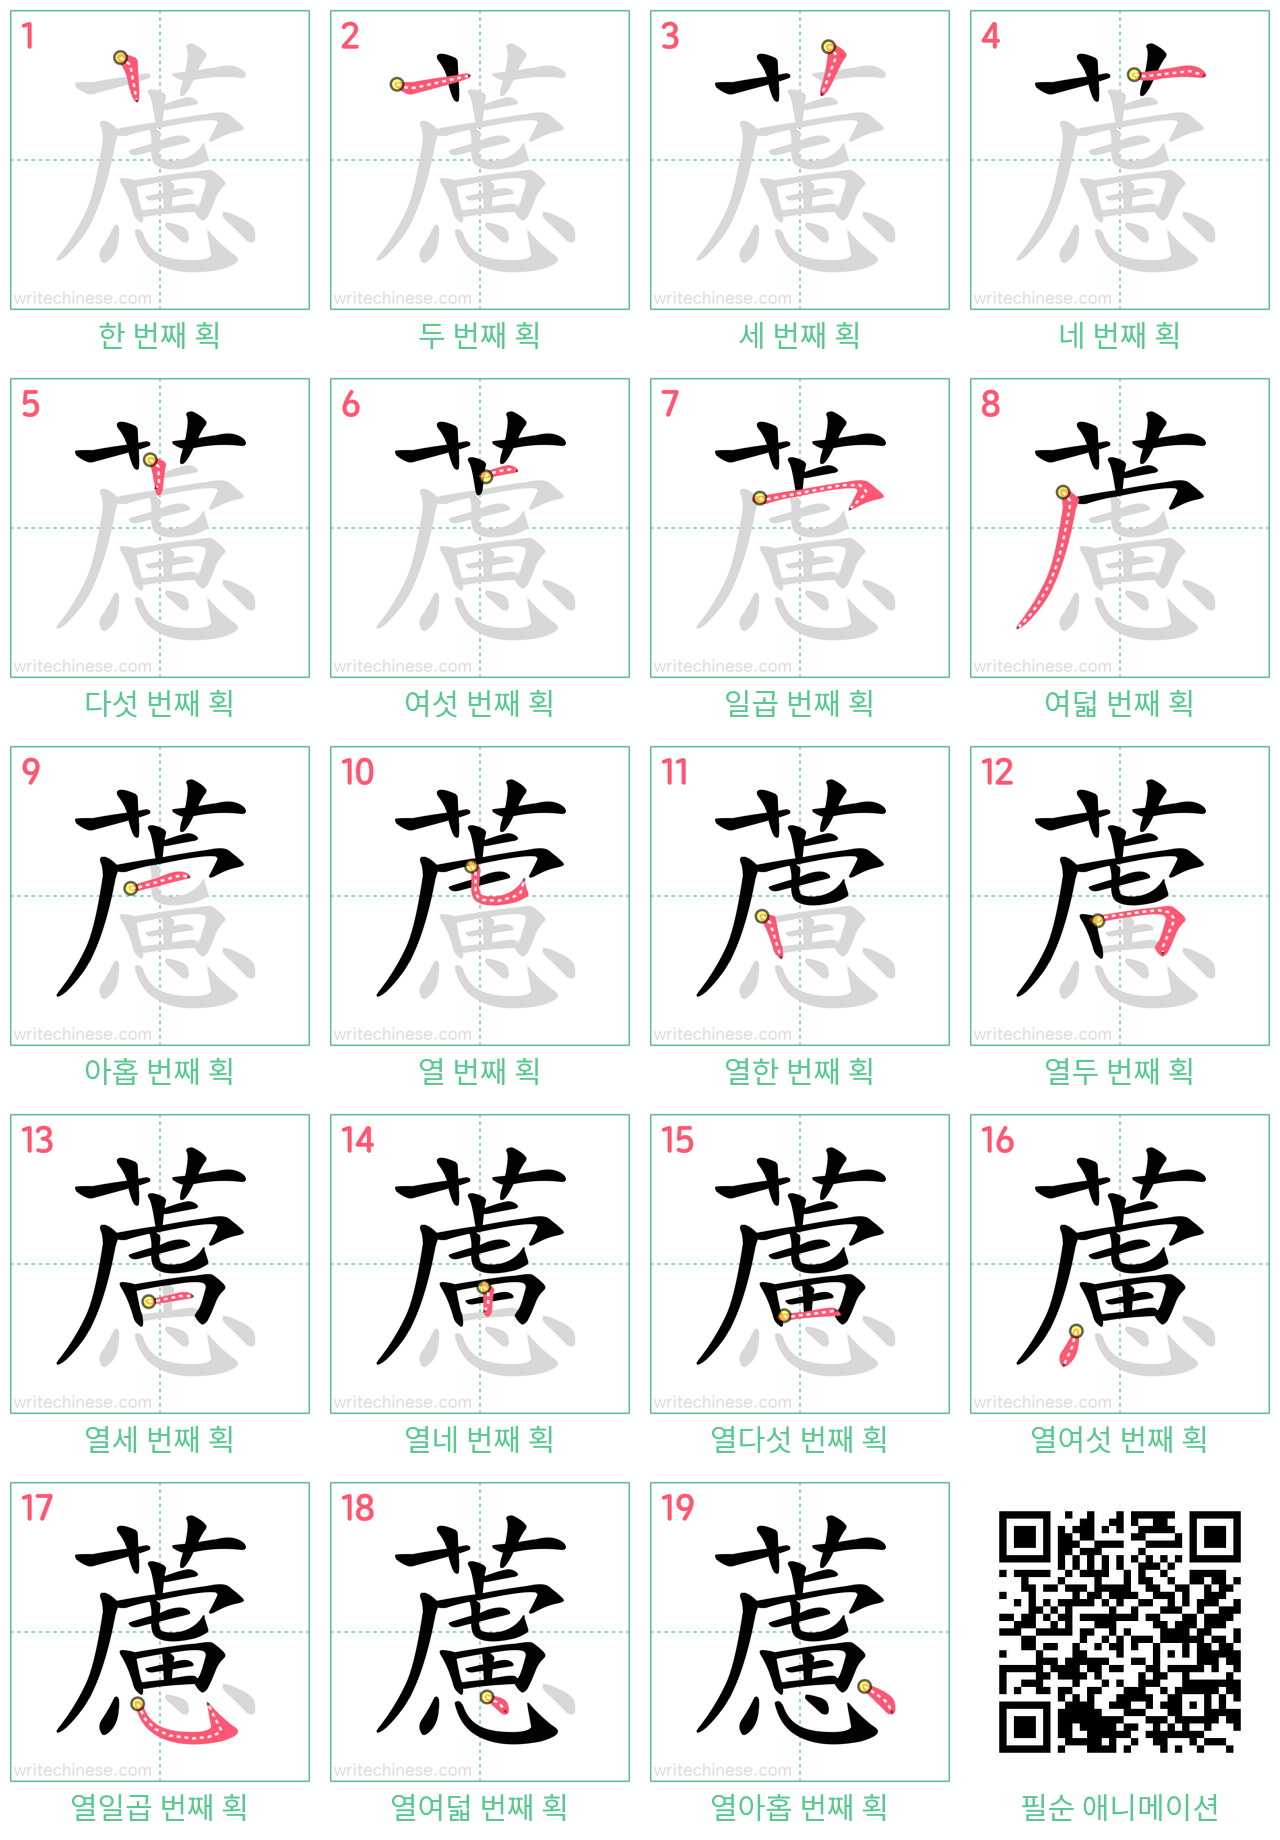 藘 step-by-step stroke order diagrams